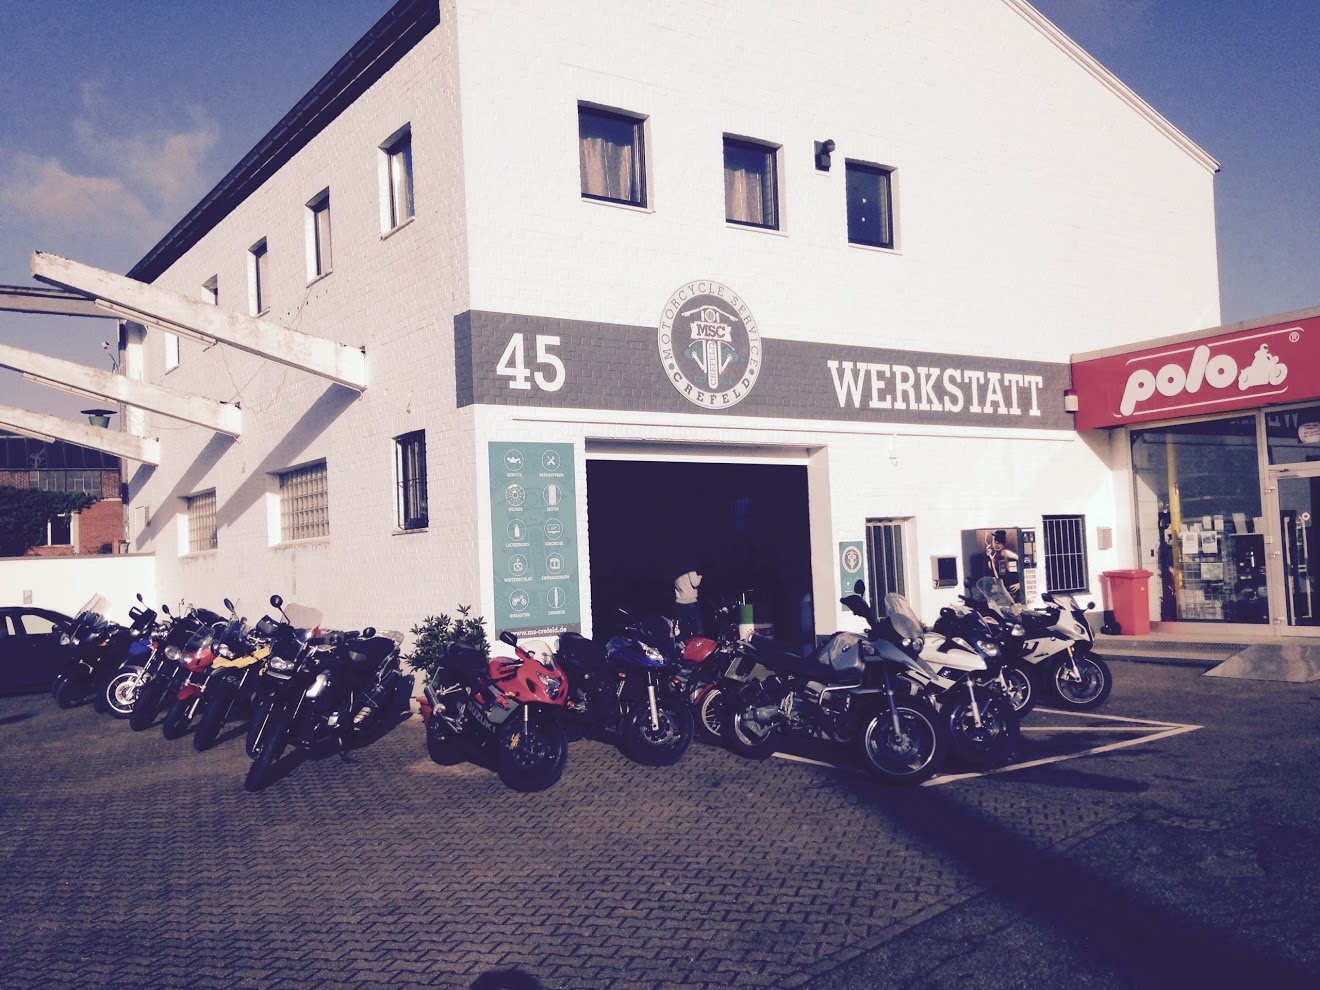 Motorcycle Service Crefeld, Lange Straße 45 in Krefeld